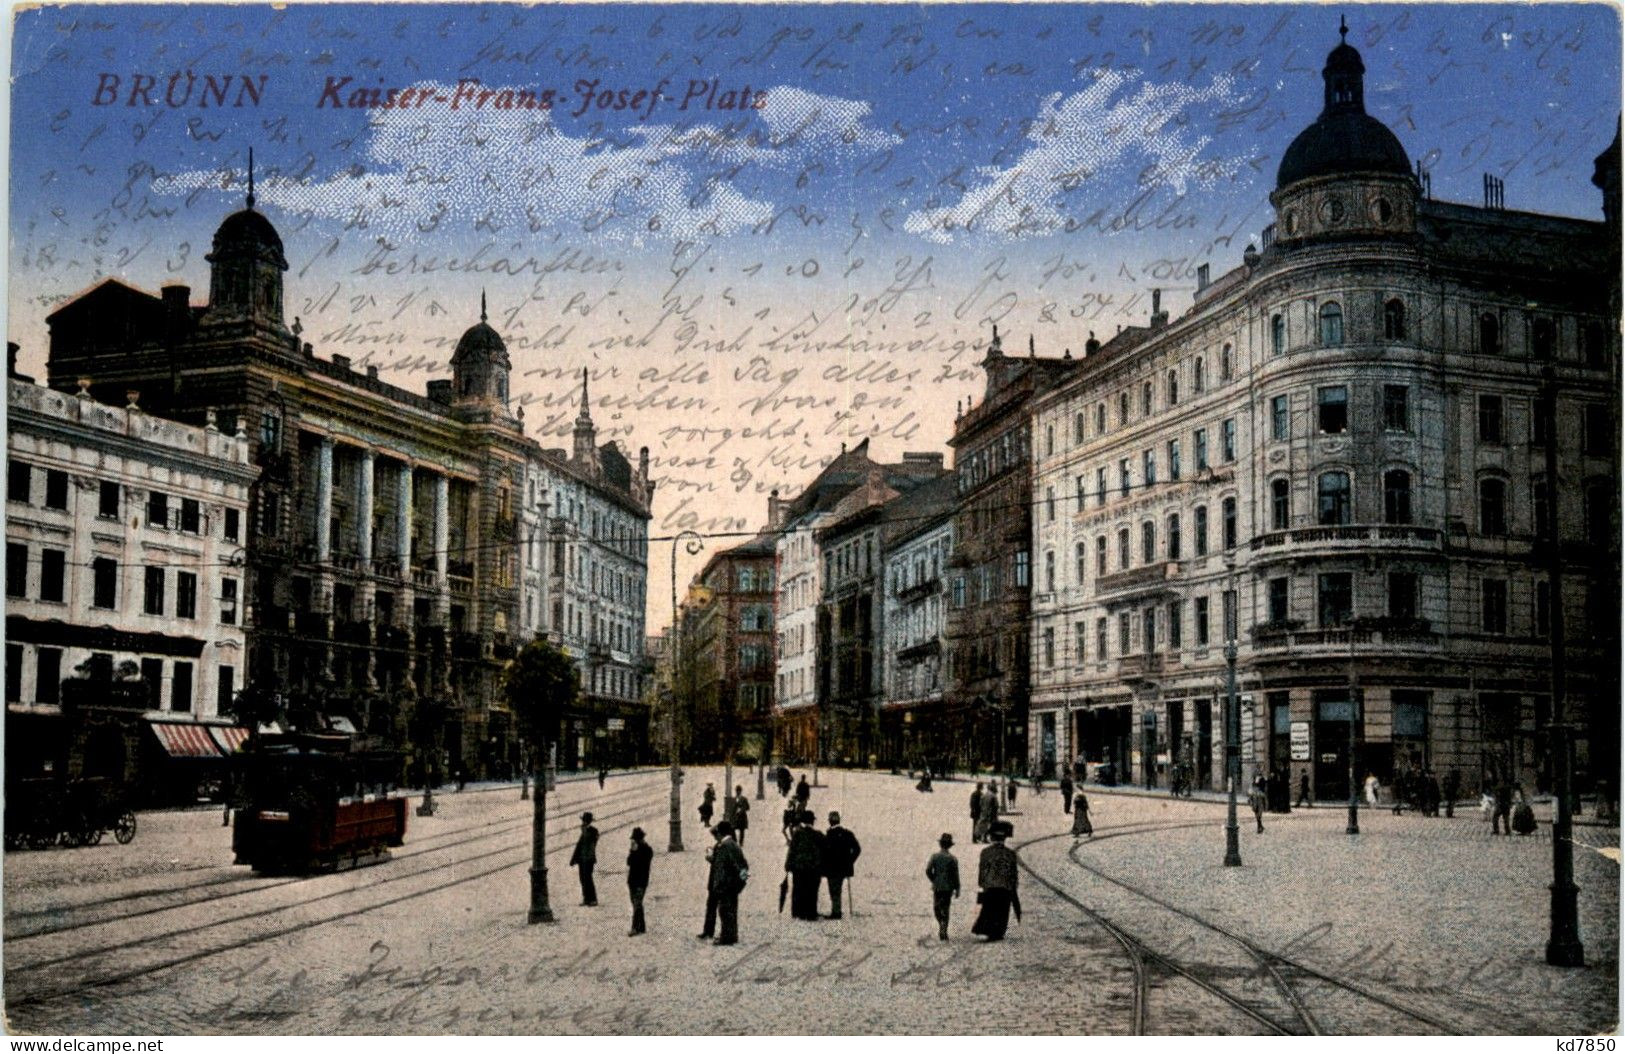 Brünn - Kaiser Franz Josef Platz - Tschechische Republik